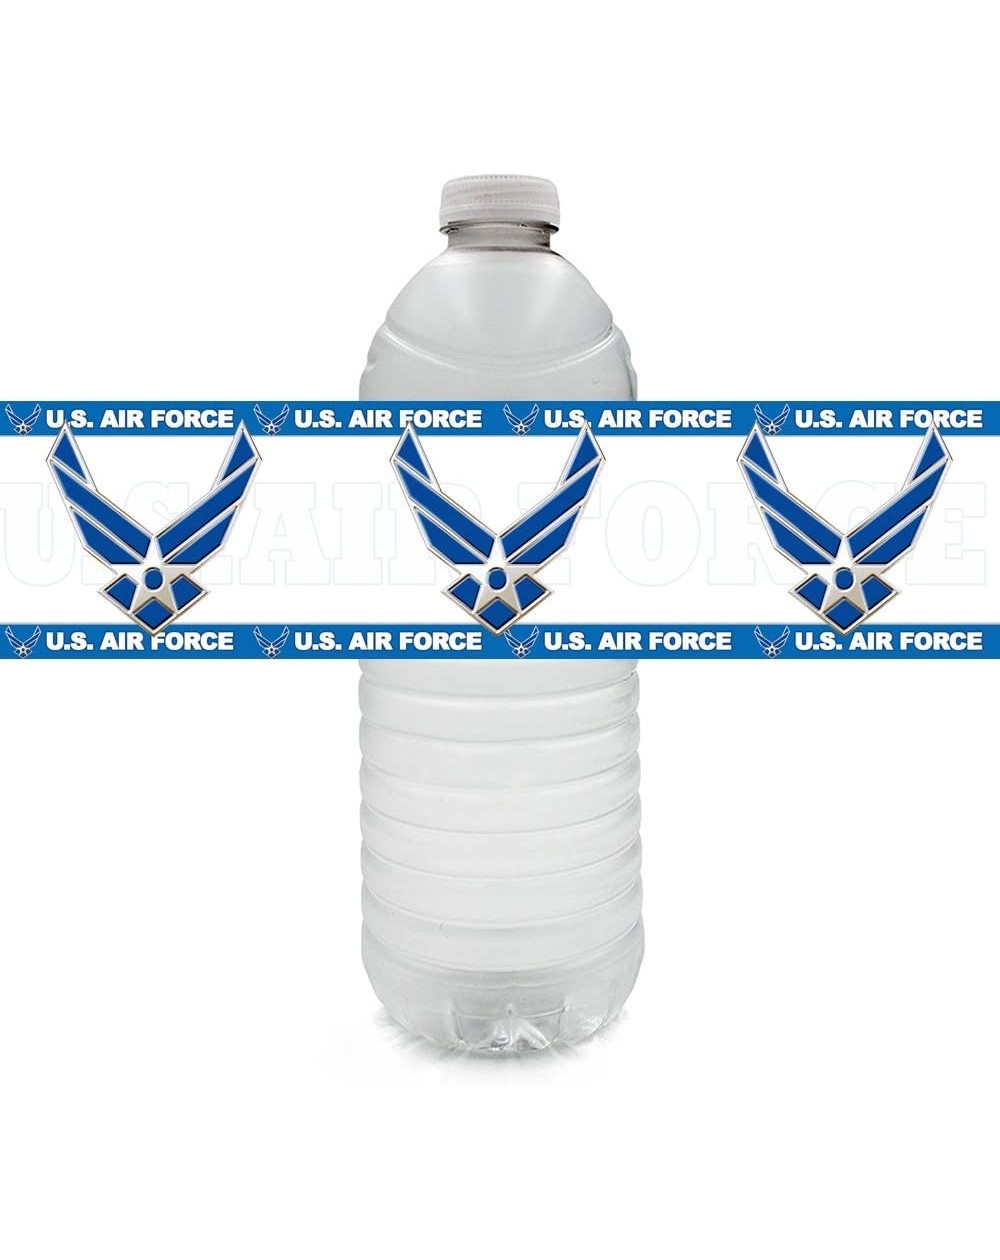 Centerpieces US Air Force Water Bottle Label (24 ct) - Water Bottle Label - CH18DXELGRZ $15.24